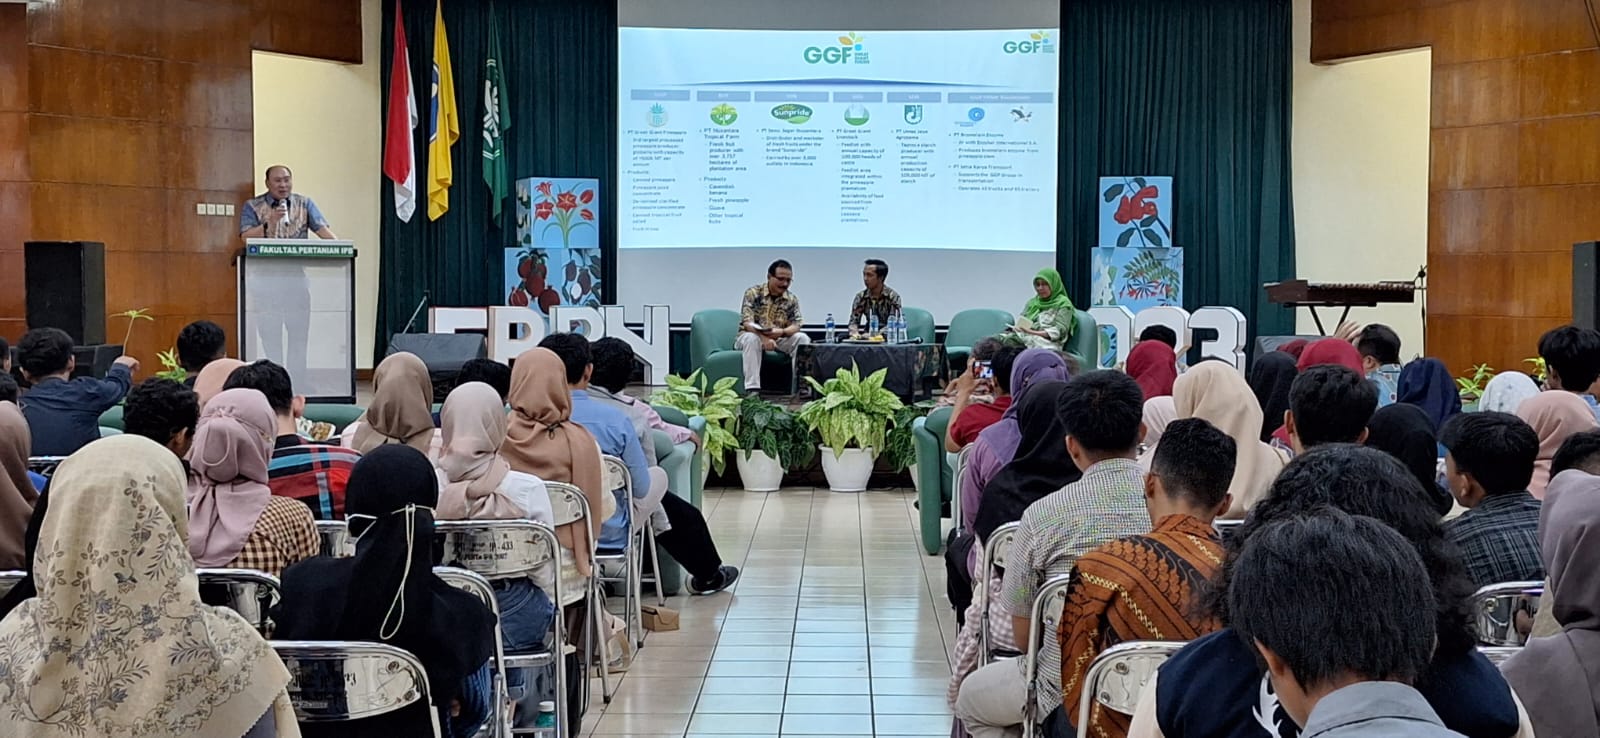 GGF Hadir dalam Seminar Nasional Festival Bunga dan Buah Nusantara